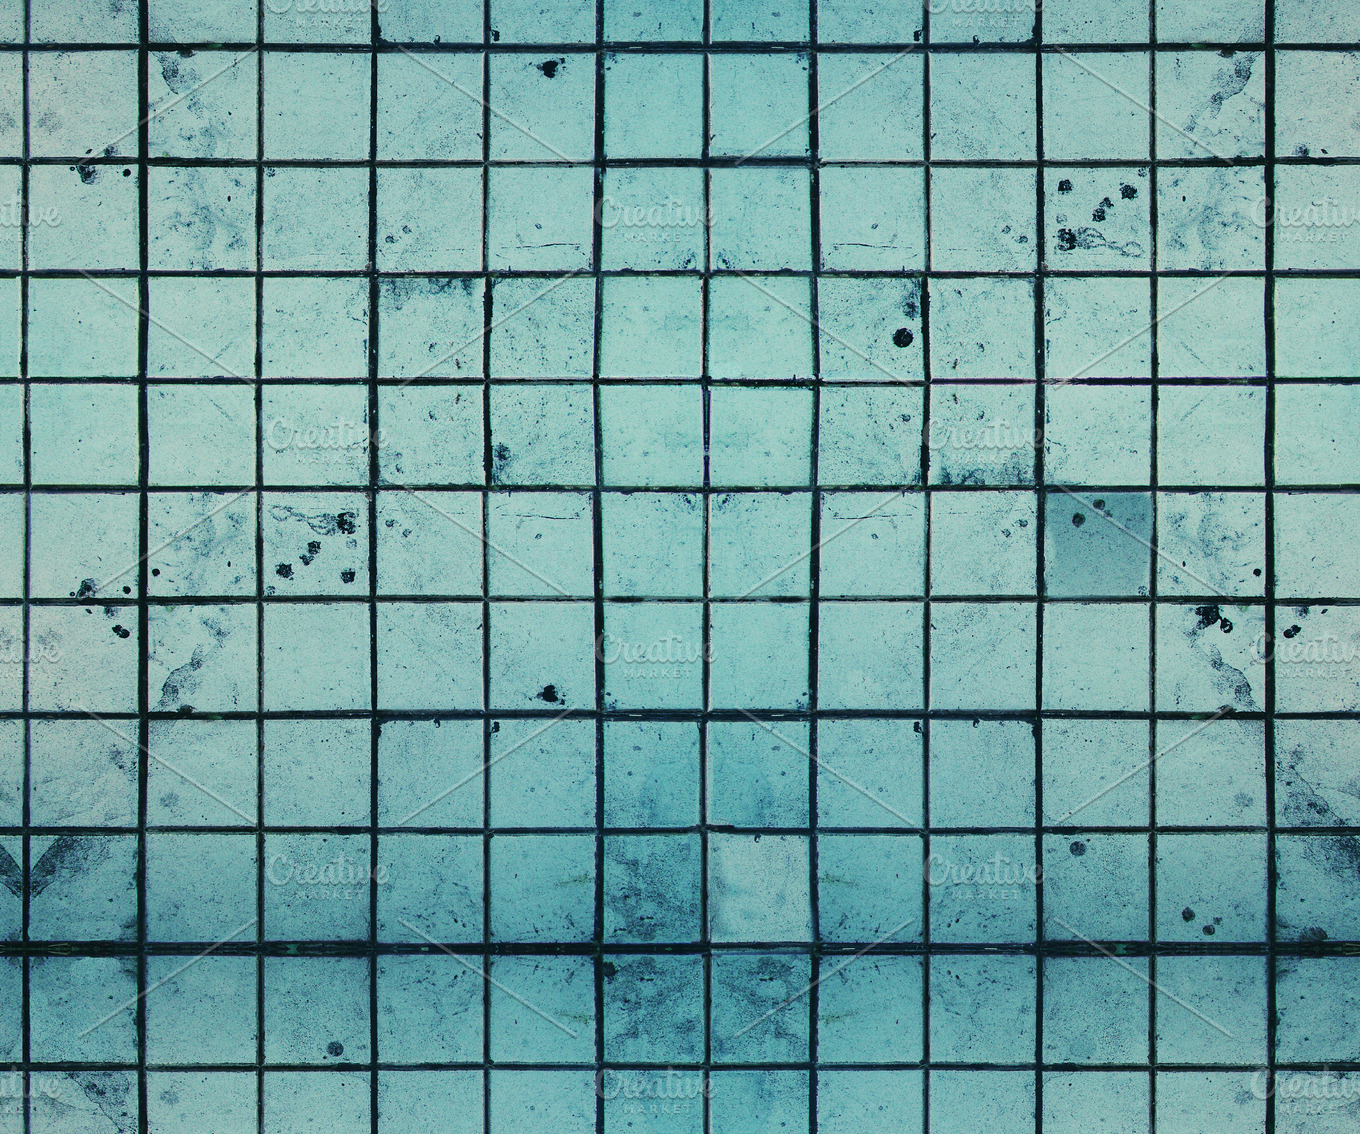 Dirty Tiles Seamless Texture ~ Abstract Photos ~ Creative Market